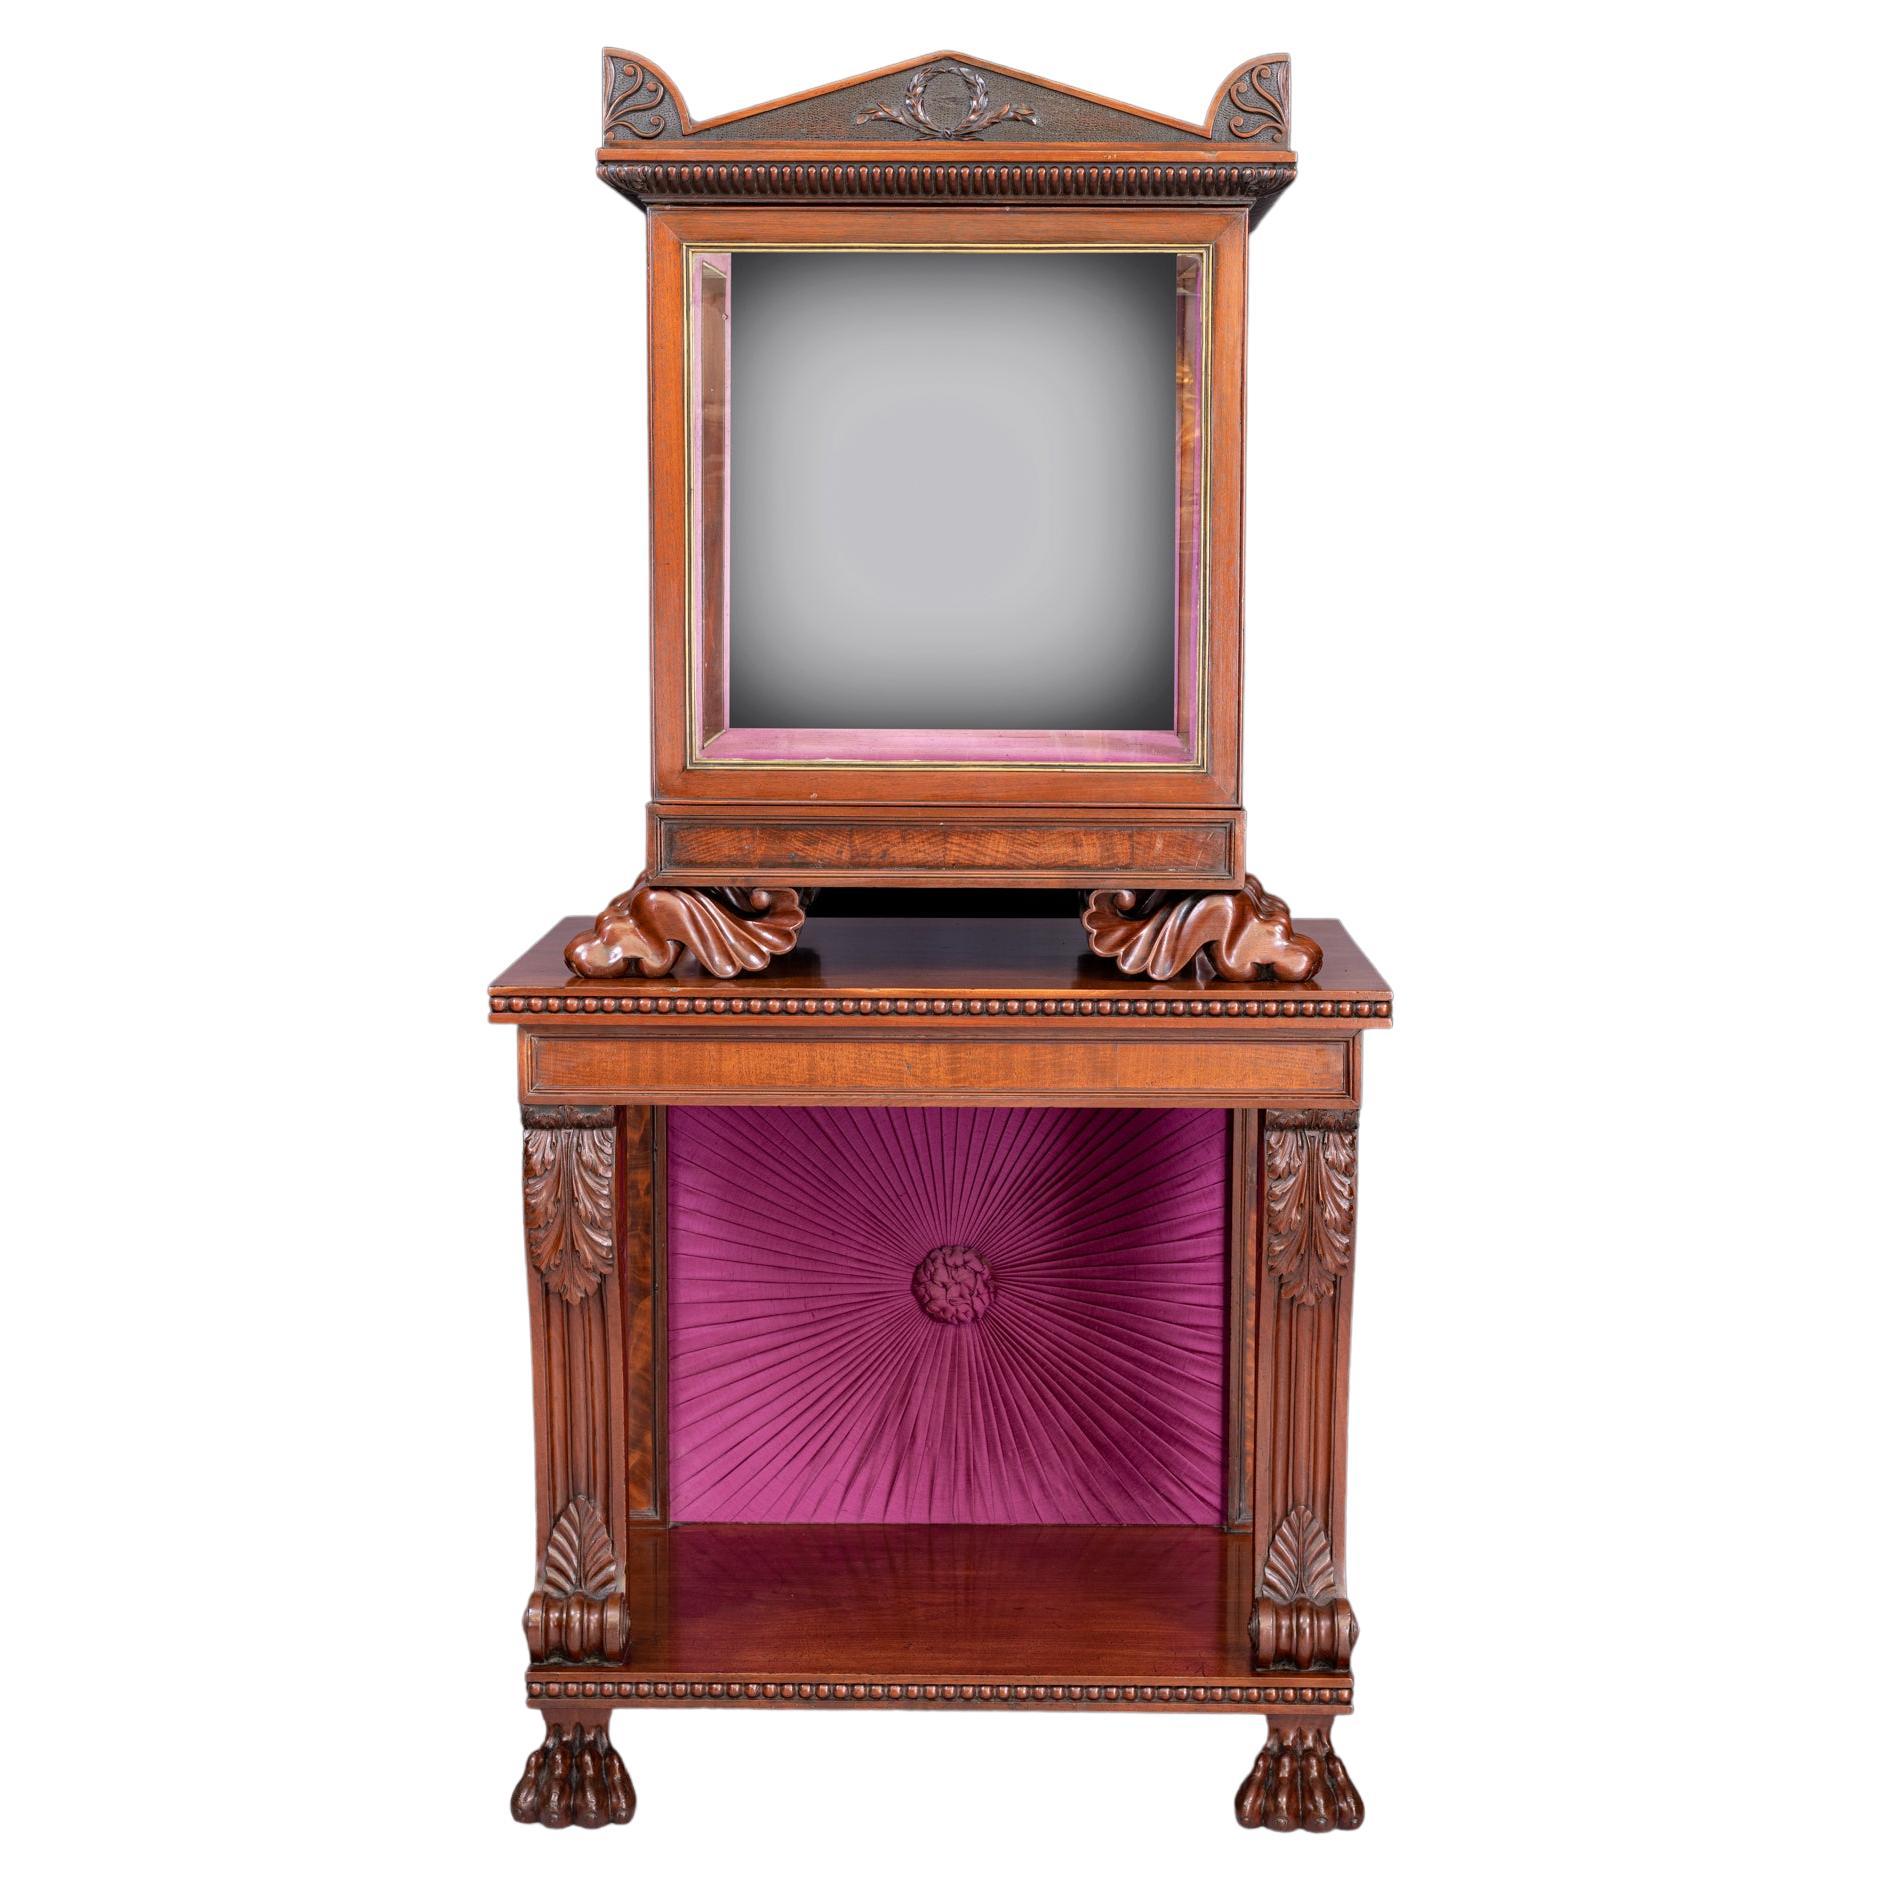 Trophée/meuble de présentation de style Régence irlandais du 19ème siècle estampillé Gillington's Dublin en vente